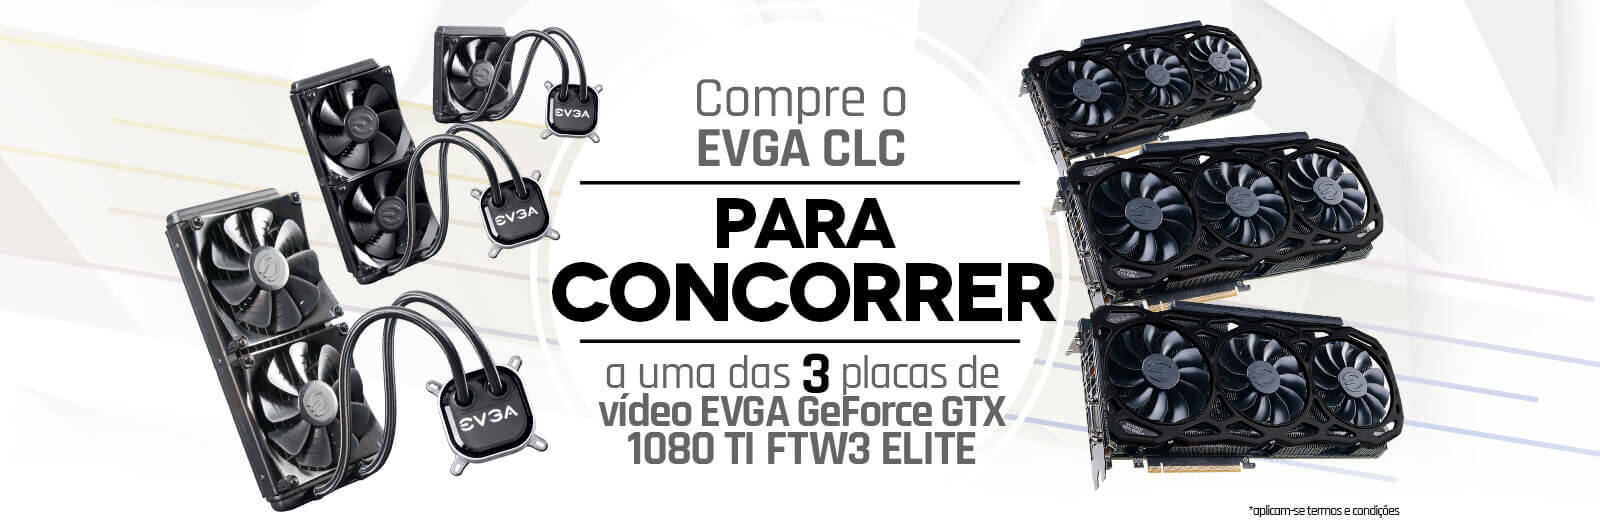 Compre o EVGA CLC para concorrer a uma das 3 placas de vídeo EVGA GeForce GTX 1080 Ti FTW3 ELITE